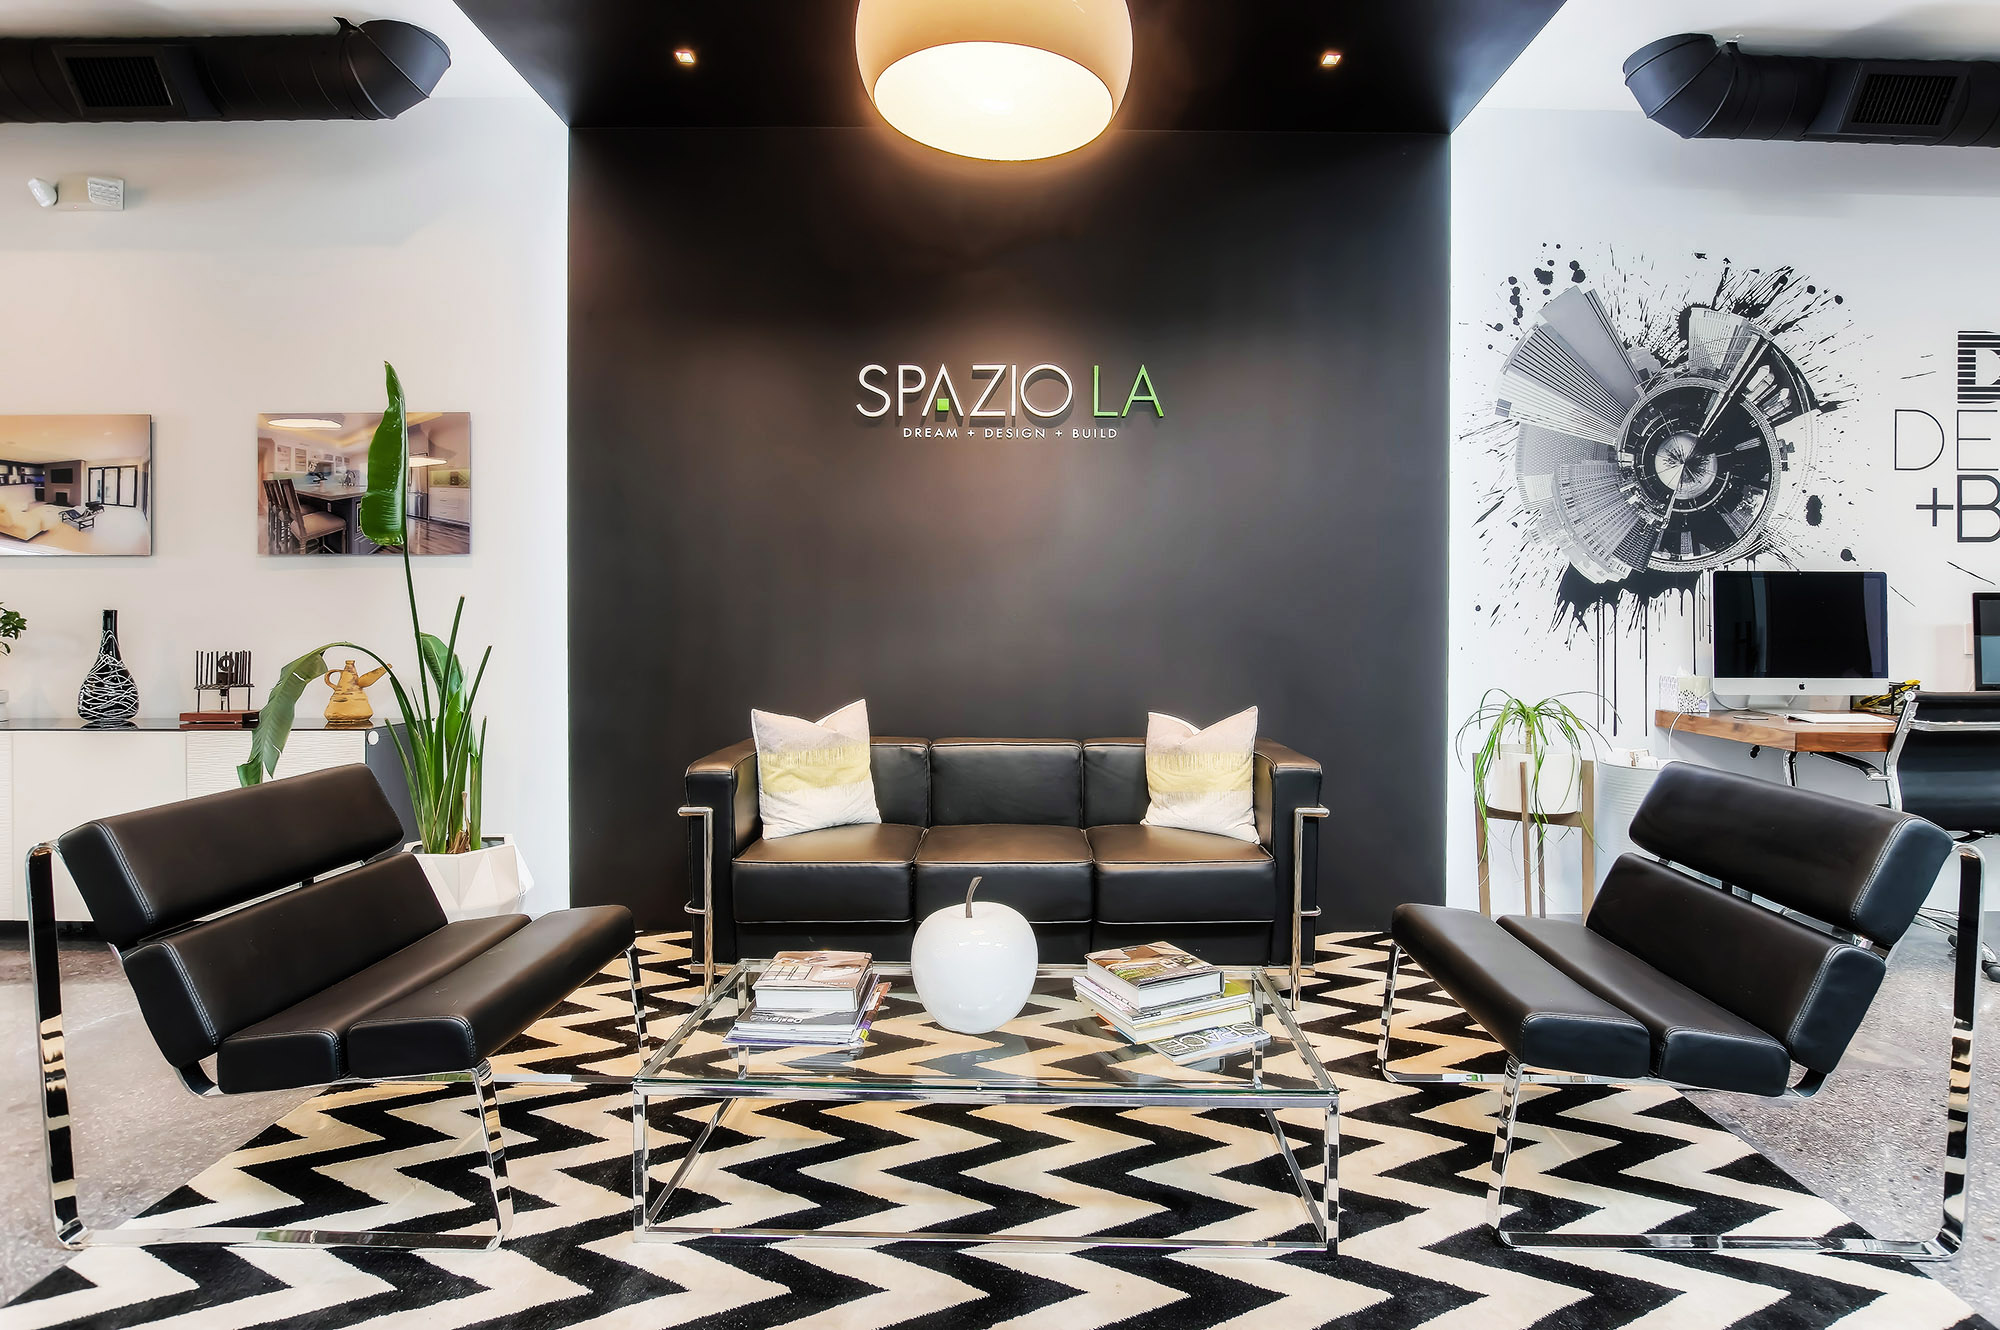 Spazio LA's new NoHo office